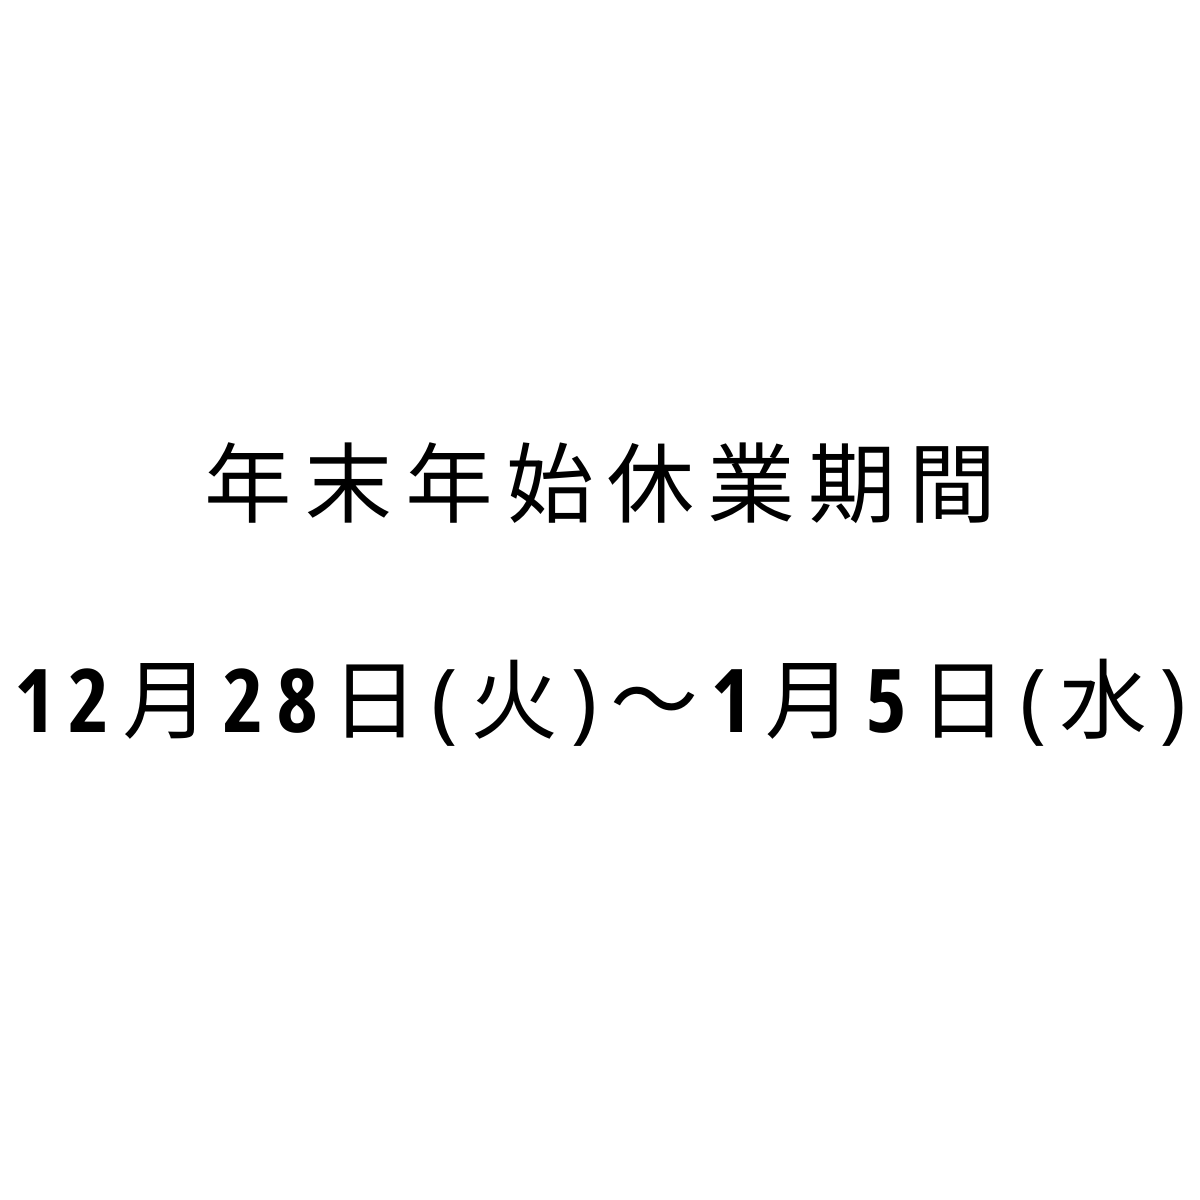 【年末年始休業期間のお知らせ】12月28日(火)〜1月5日(水)